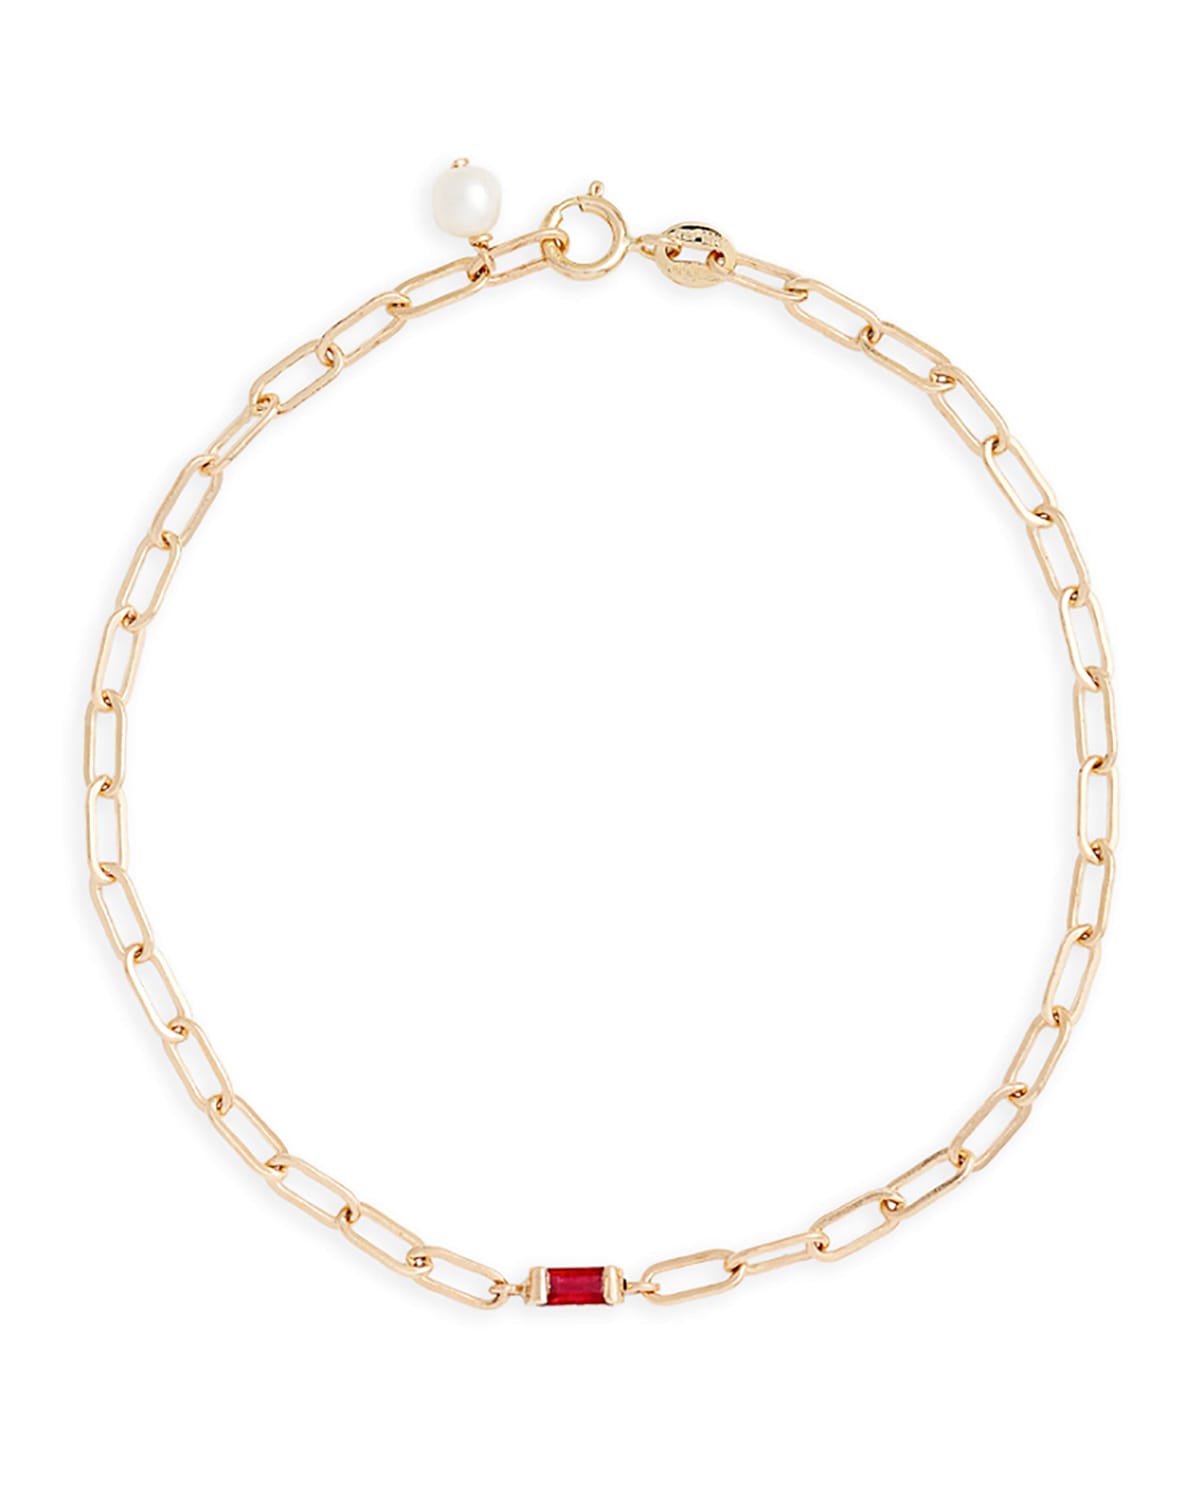 Poppy Finch 14k Gold Interlocking Chain Ruby Bracelet